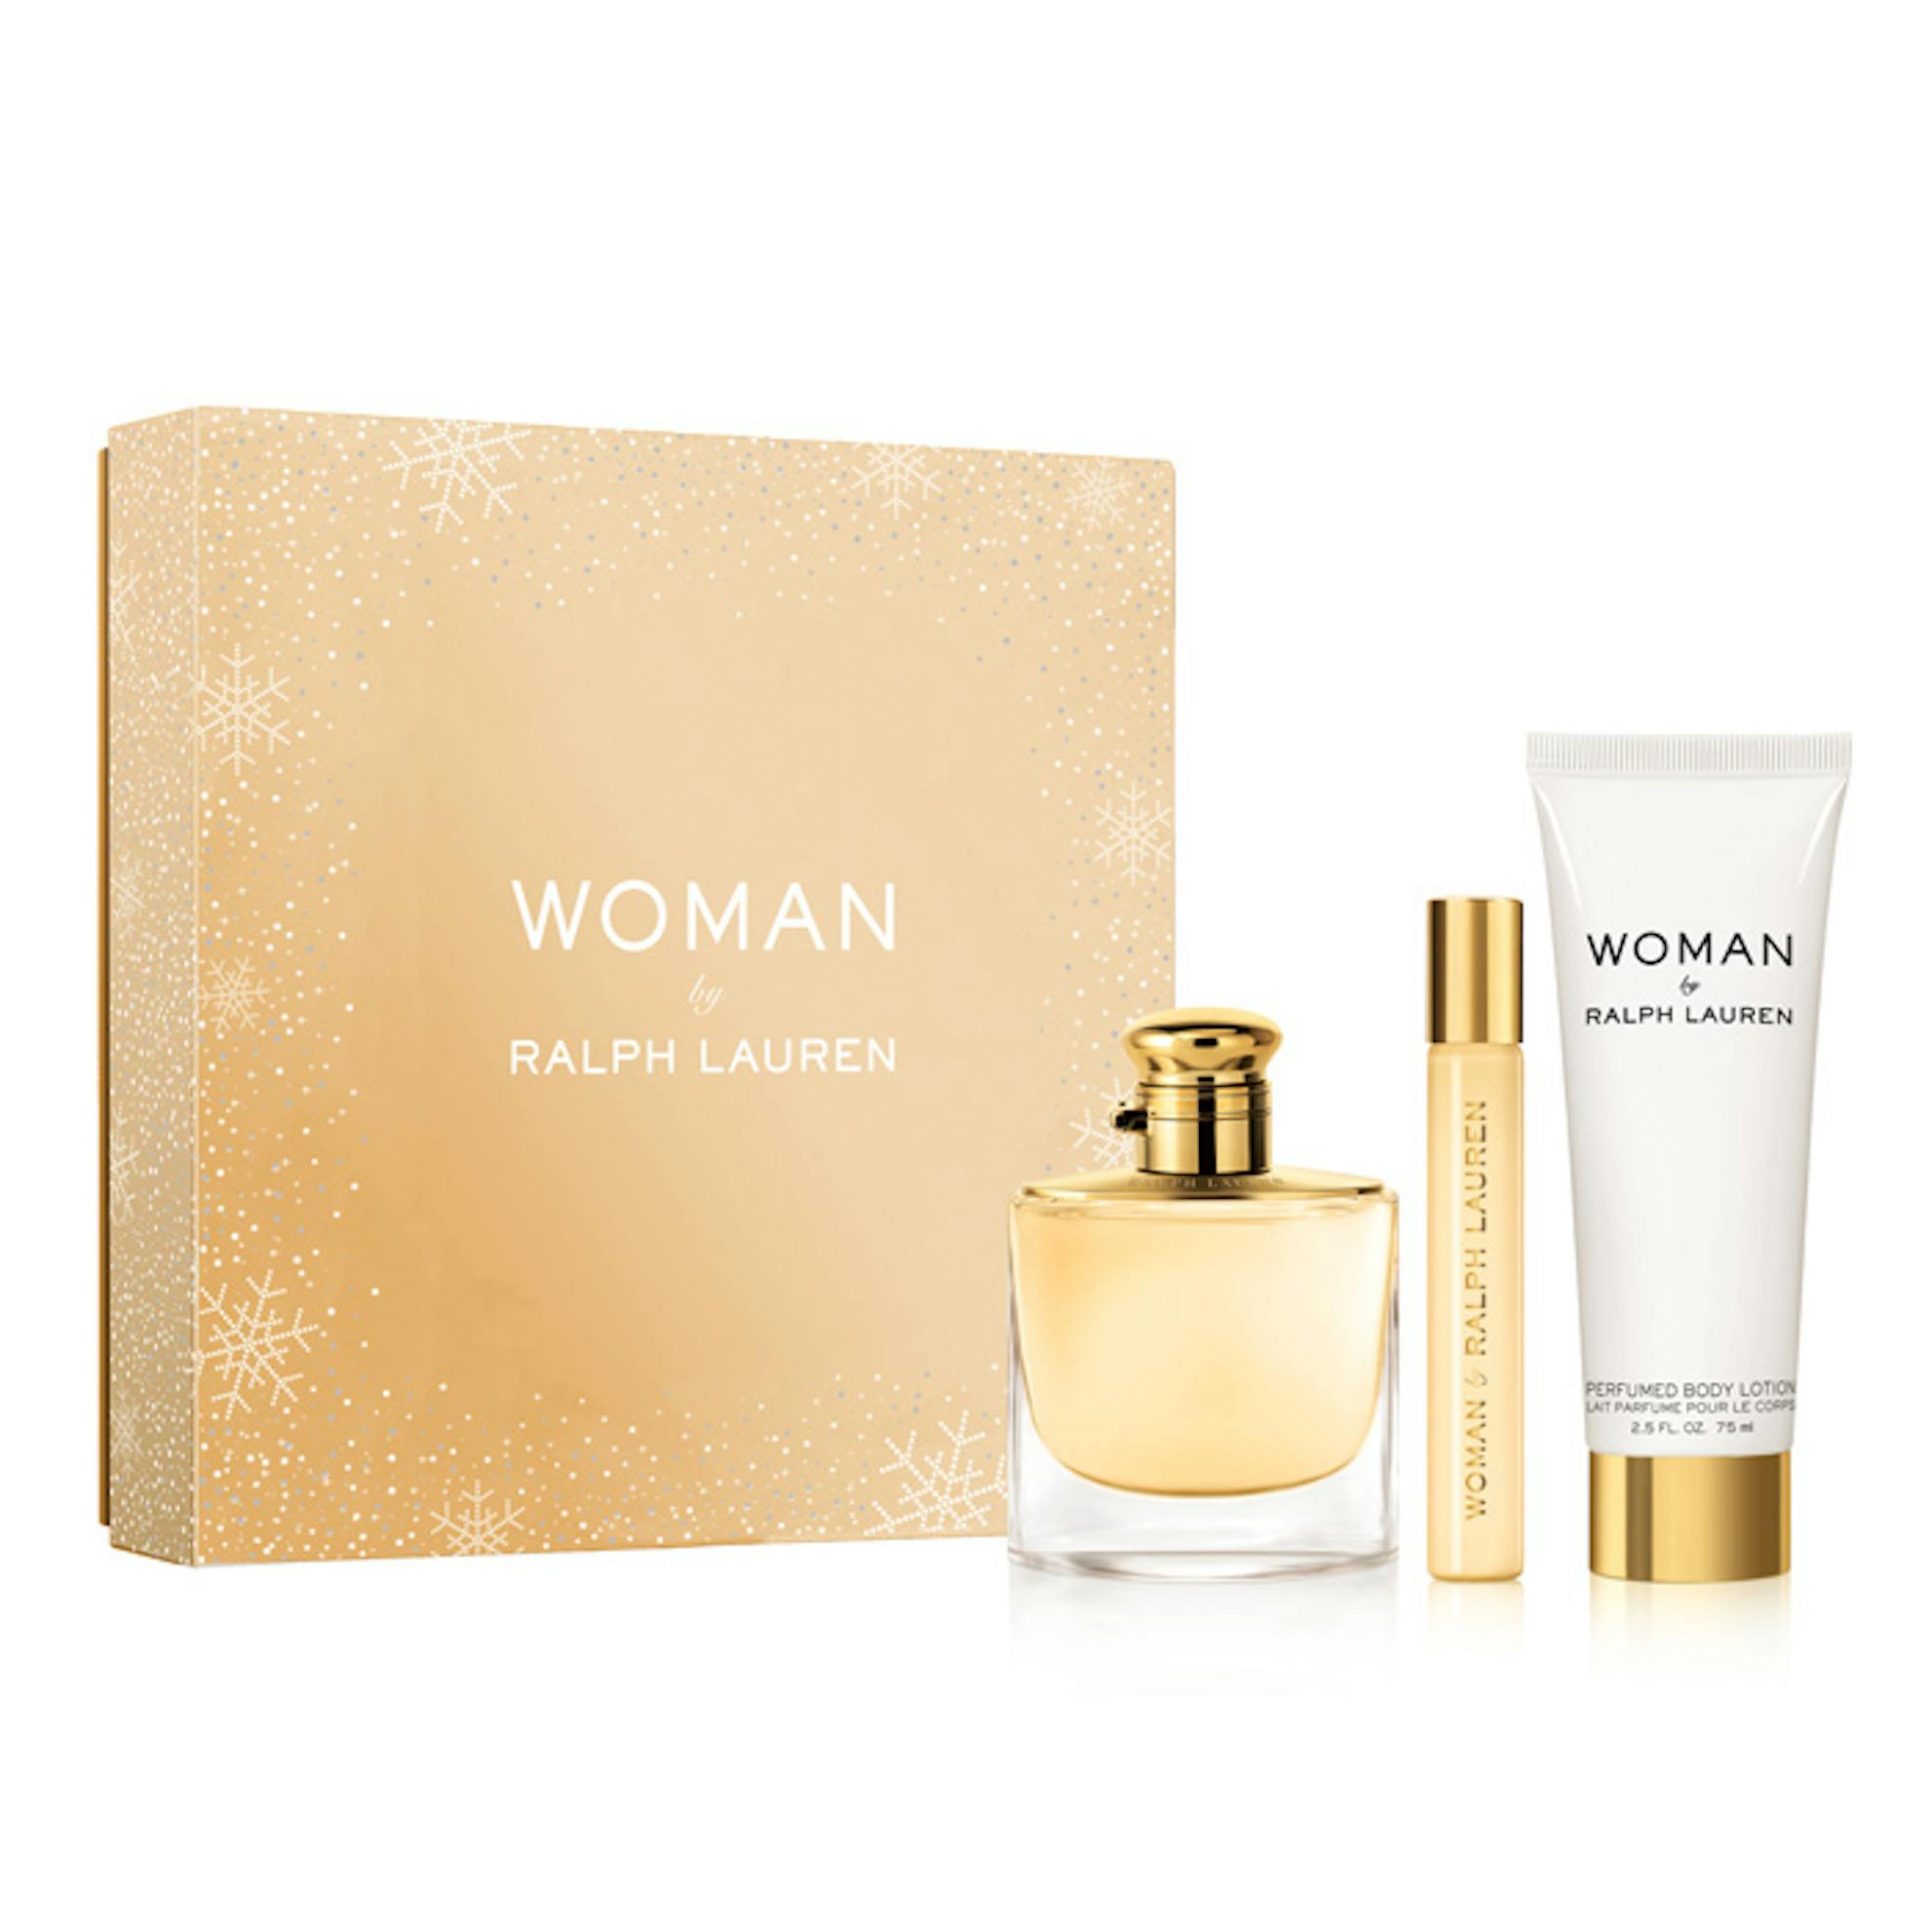 Actualizar 57+ imagen perfume woman ralph lauren - Abzlocal.mx